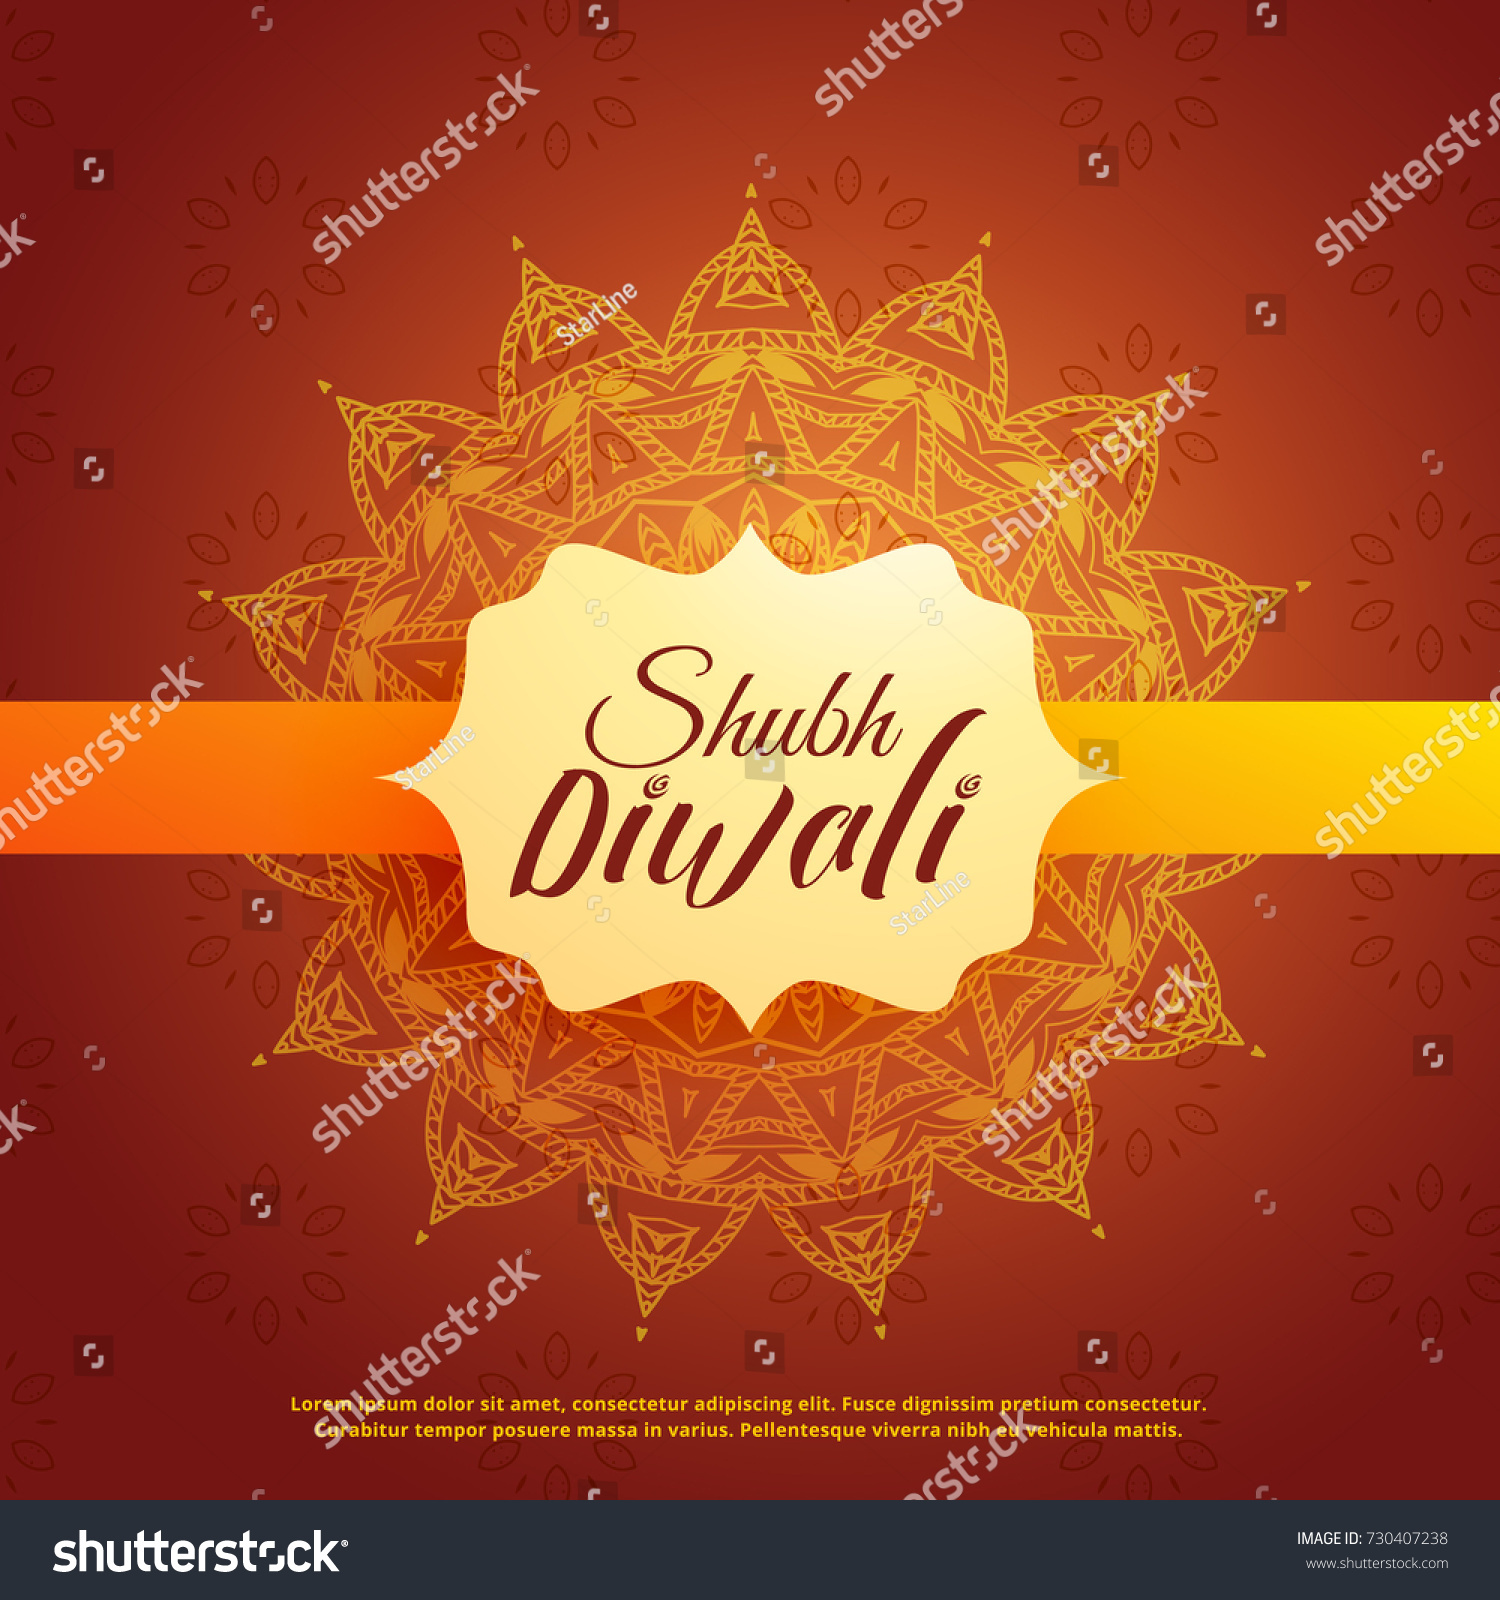 shubh (translation happy) diwali background with mangala decoration #730407238